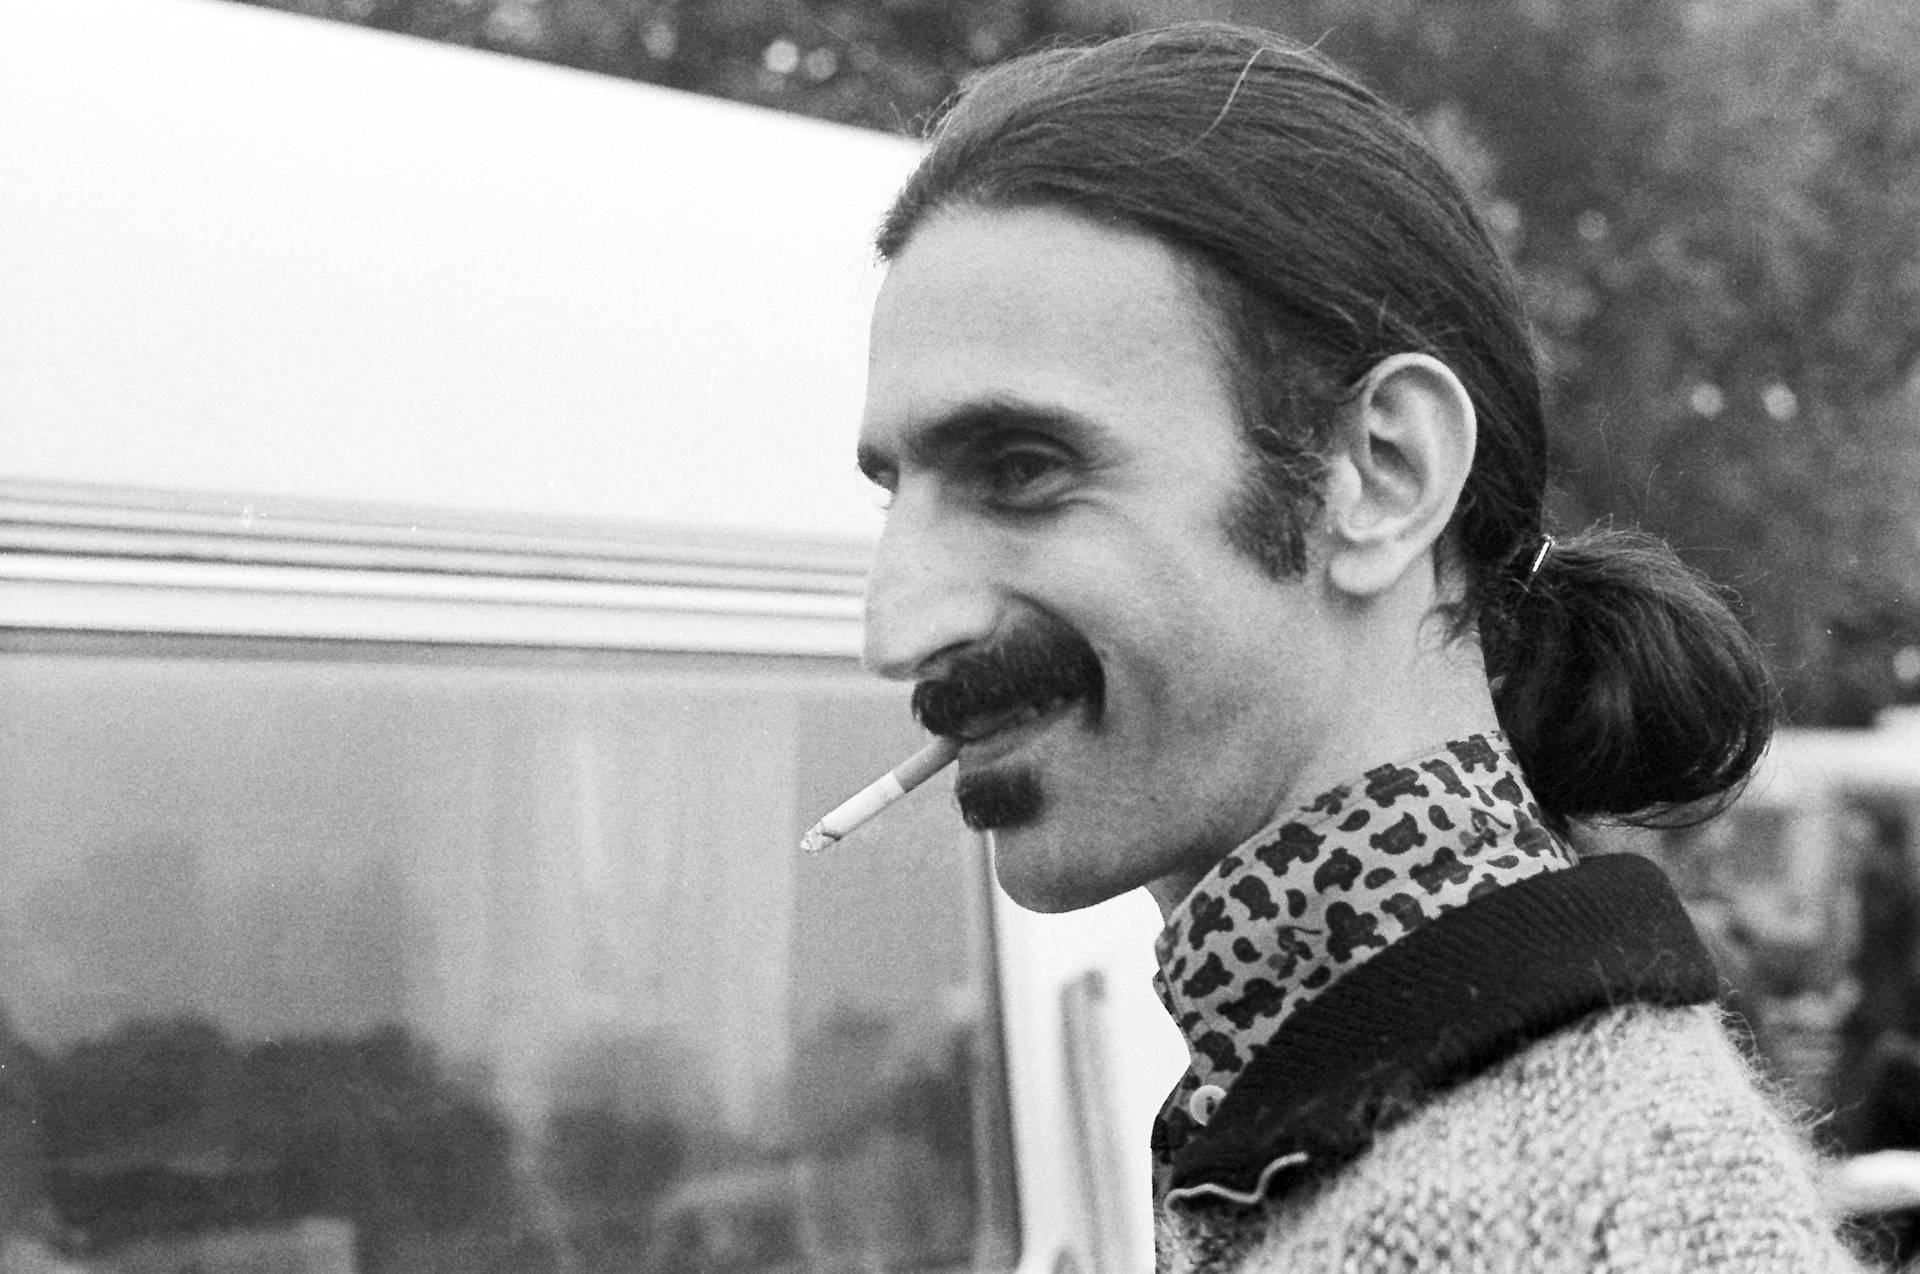 Smoking Frank Zappa Background